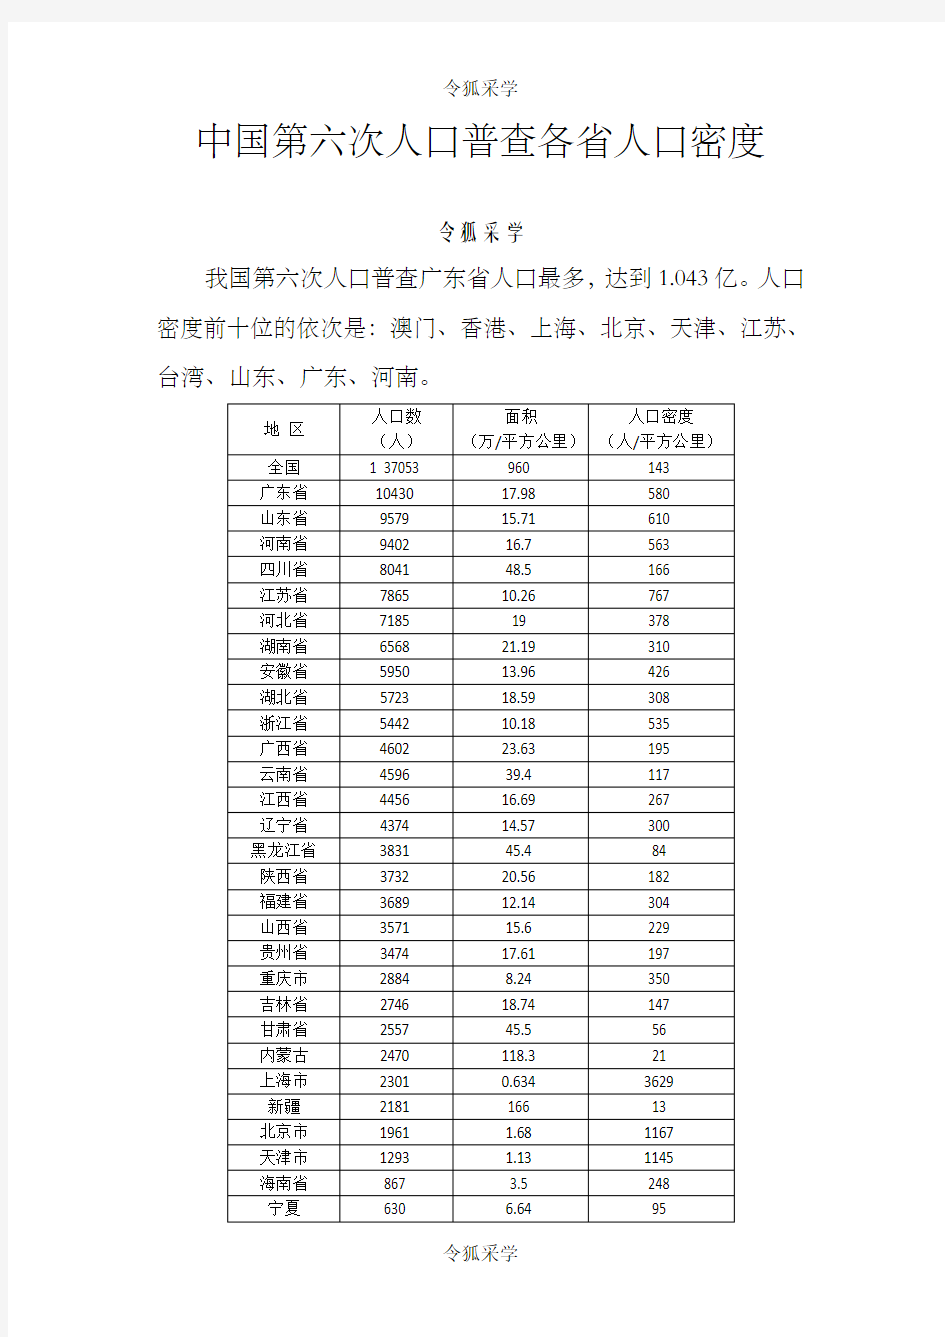 中国各省人口密度排名(含部分国家)